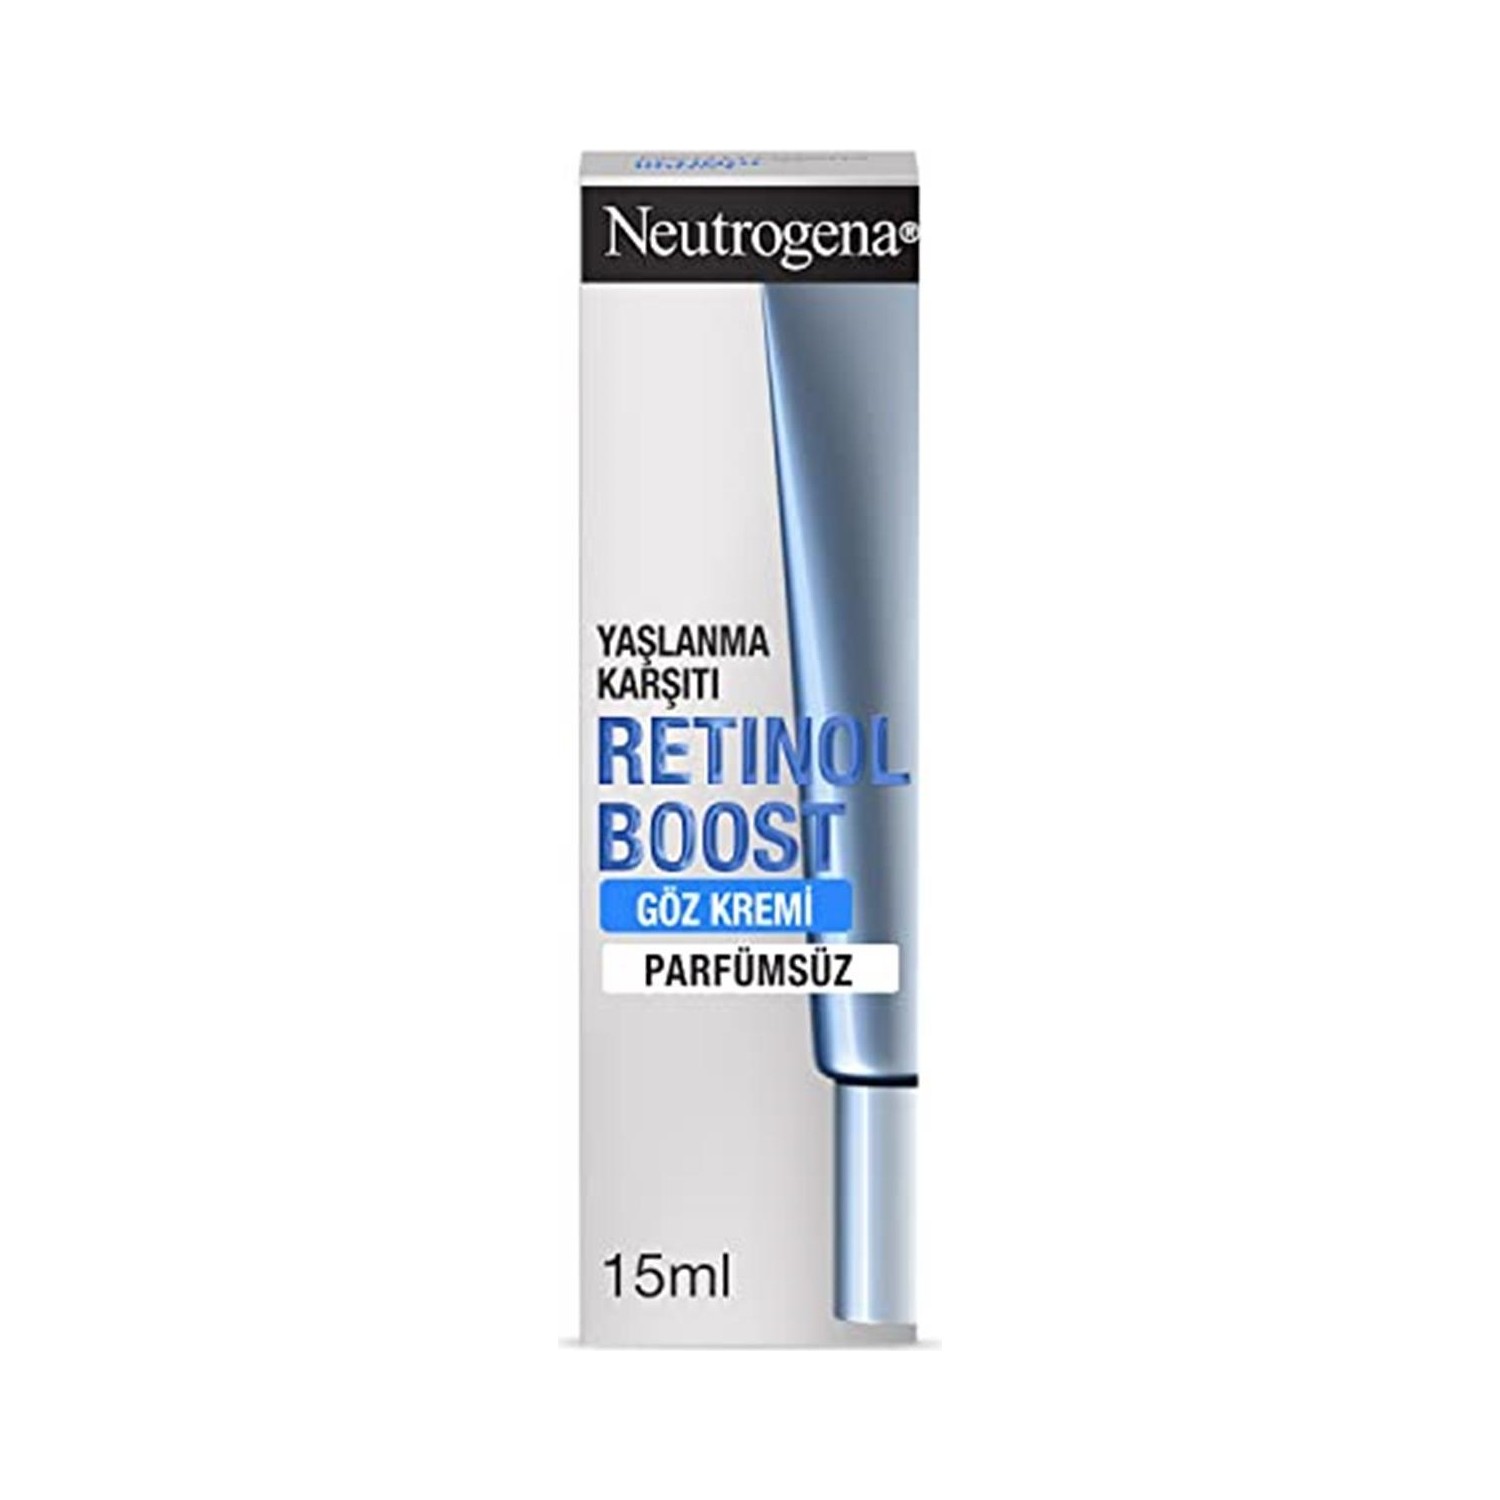 Крем для кожи вокруг глаз Neutrogena Retinol Boost, 15 мл крем для кожи вокруг глаз против морщин neutrogena retinol boost 15 мл